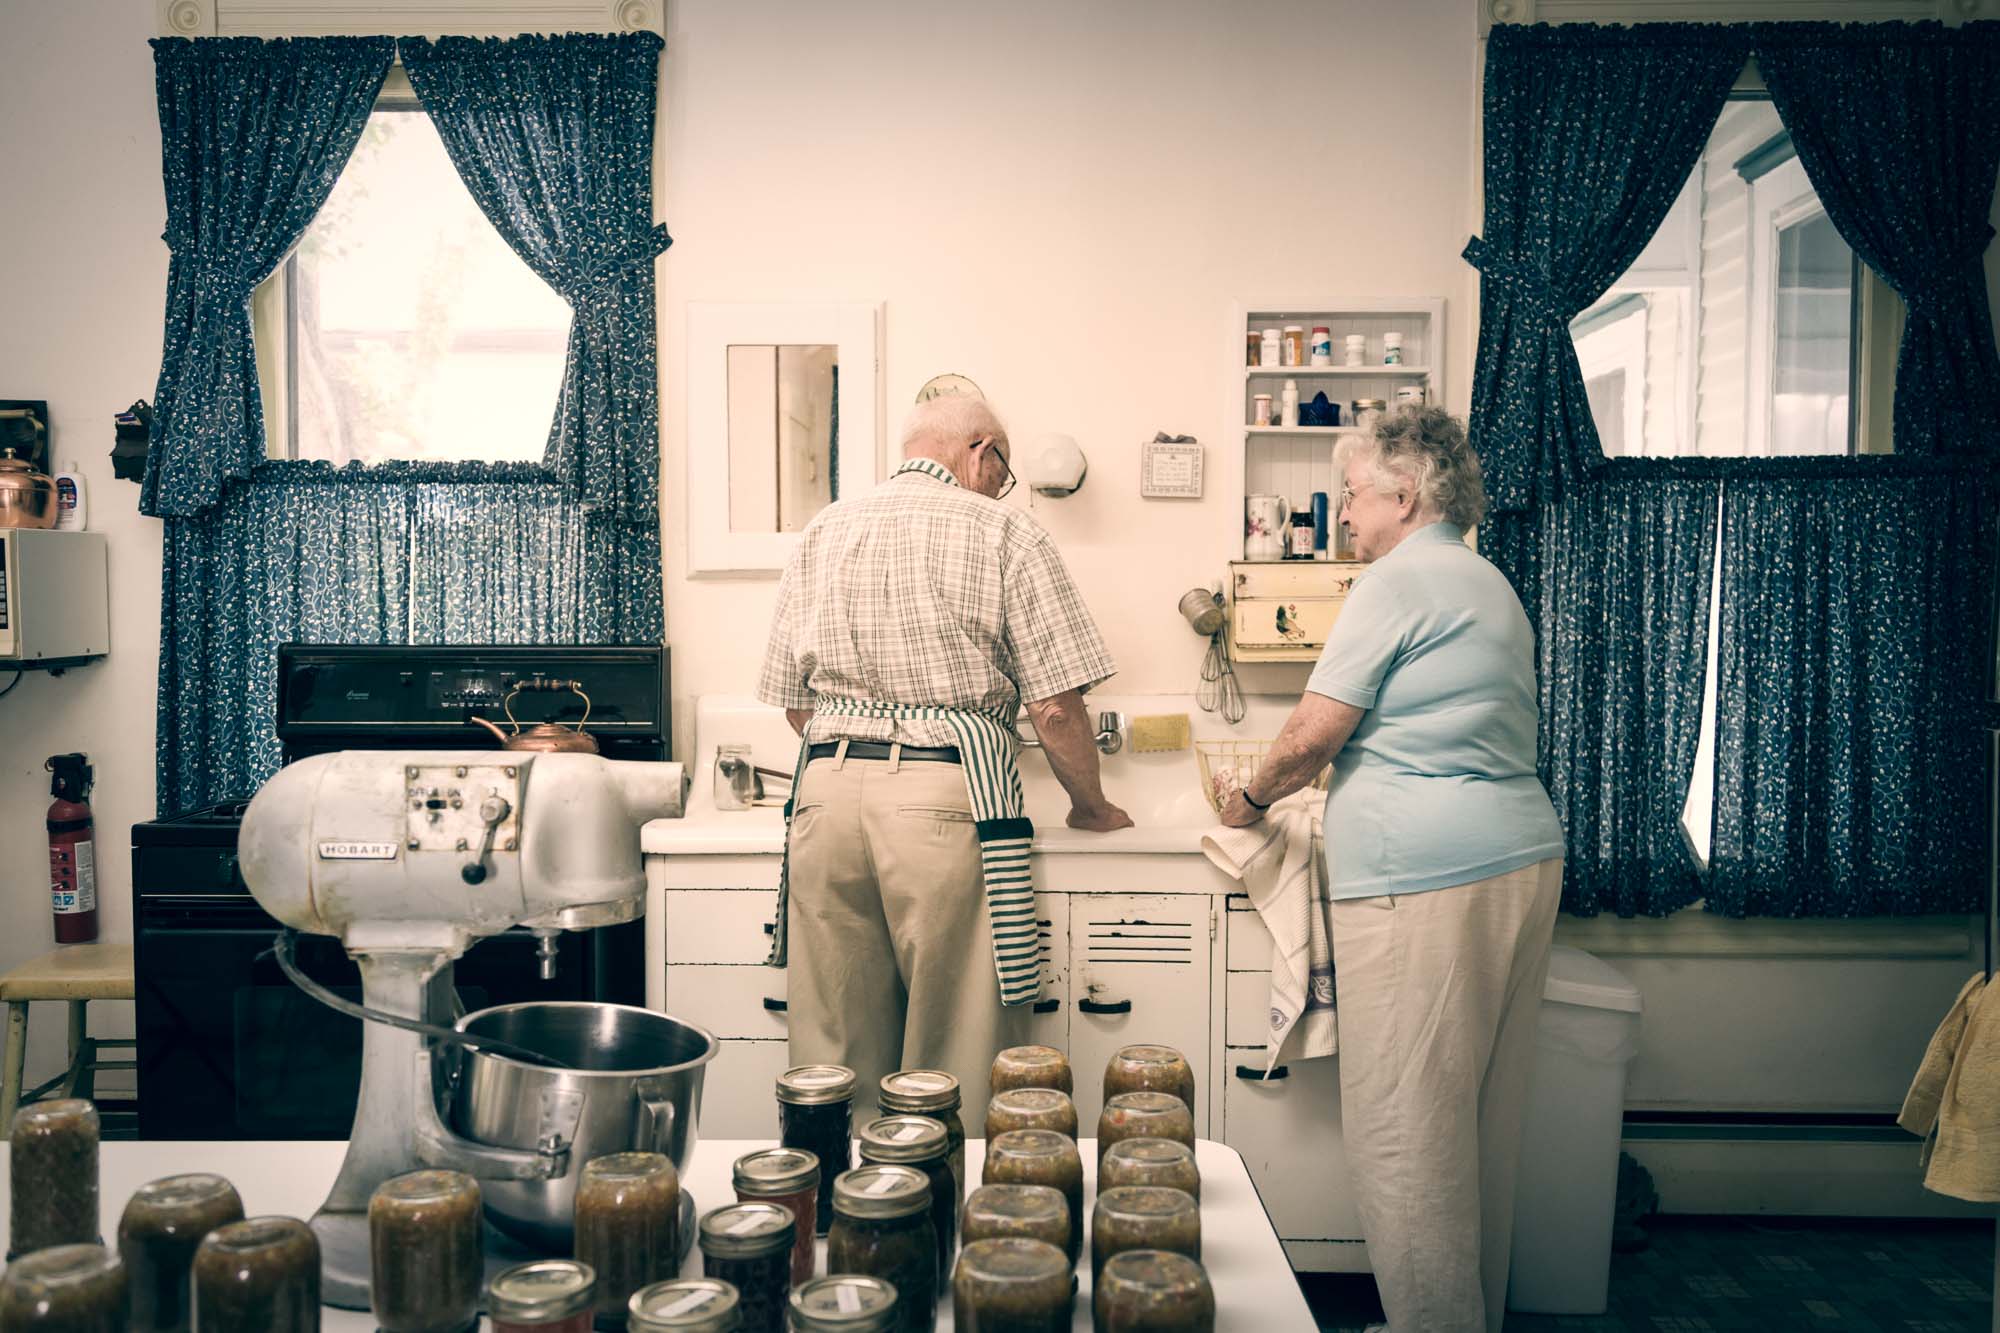 Senior Citizen Couple washing dishes together